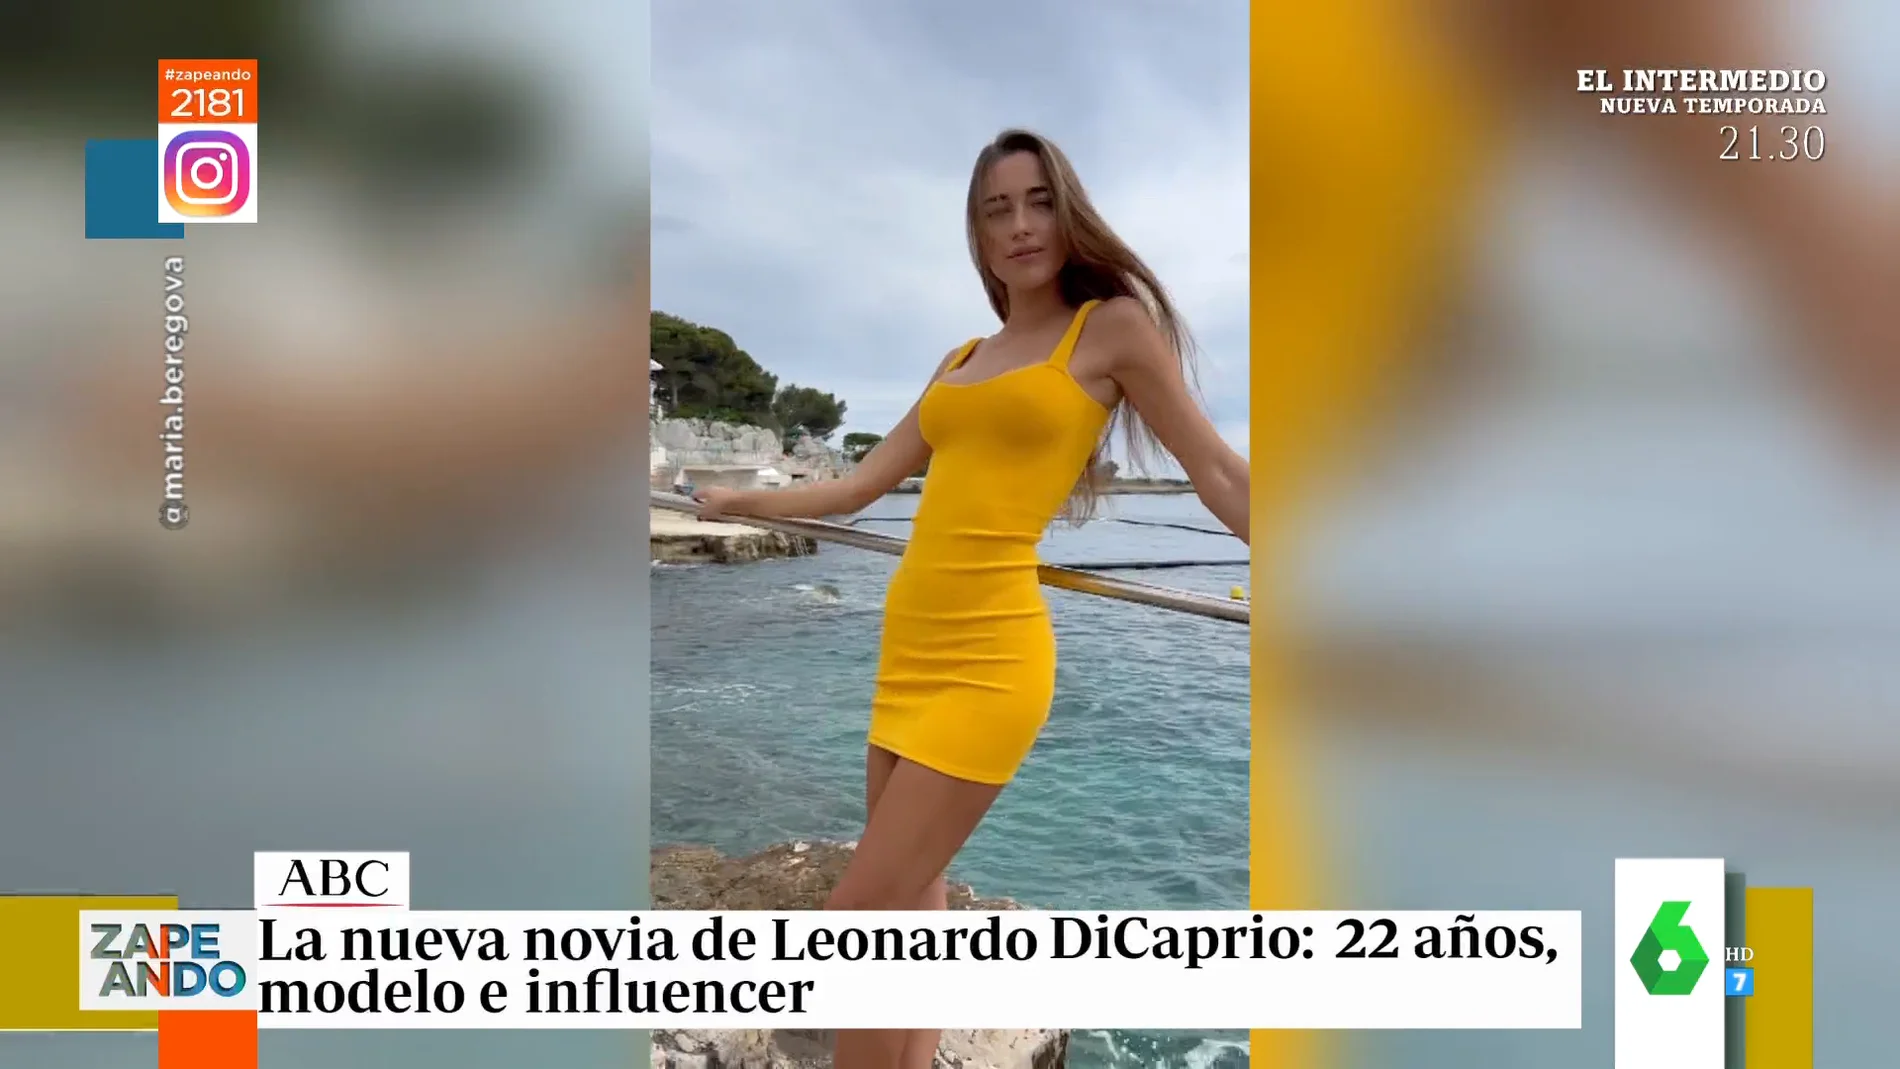 Divorciada, ucraniana y con 22 años: así es María Beregova, la modelo que habría conquistado a Leonardo Dicaprio